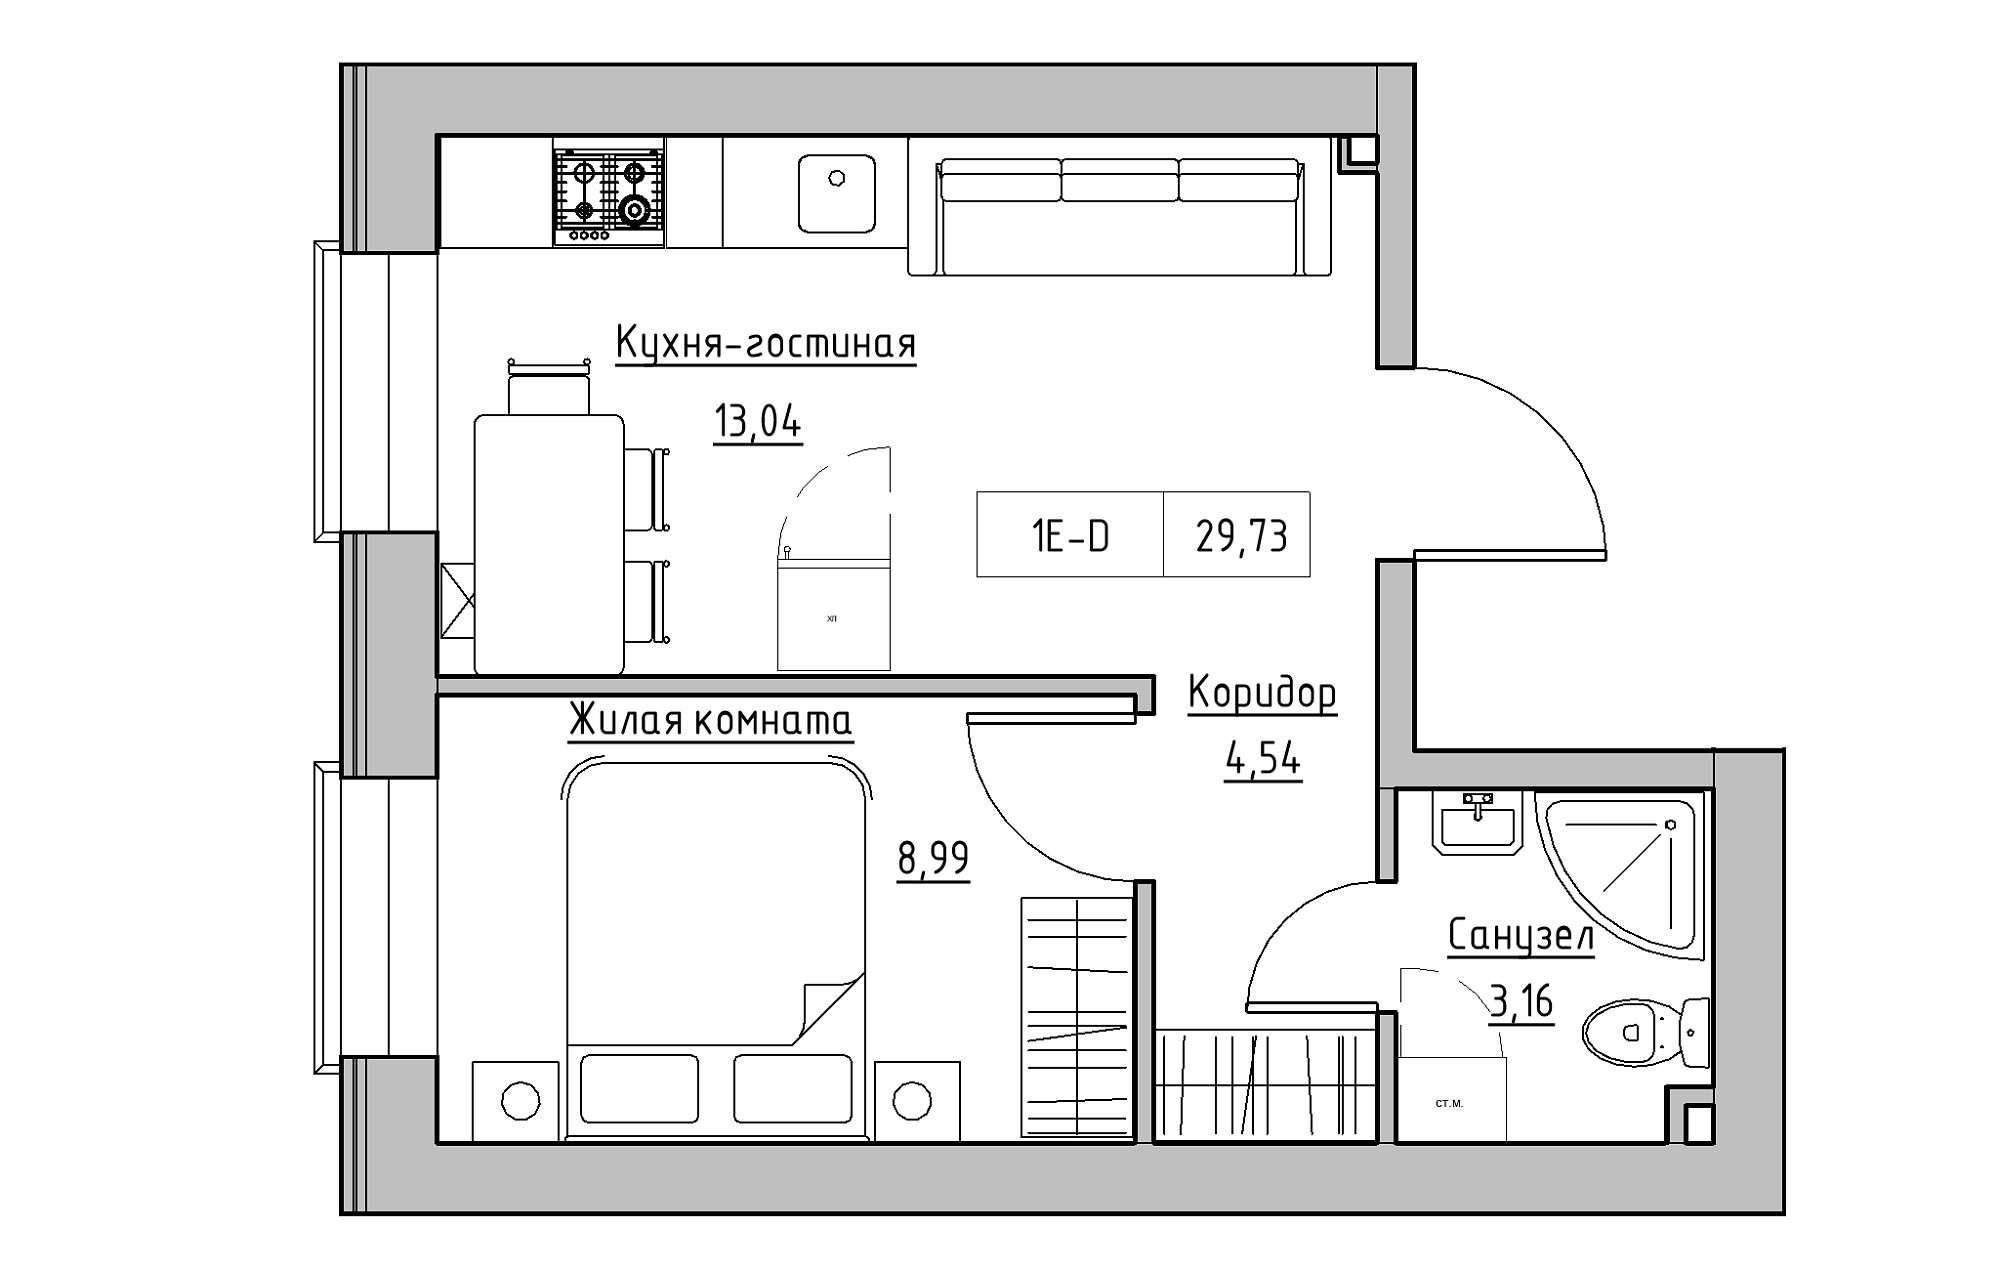 Планування 1-к квартира площею 29.73м2, KS-018-01/0012.